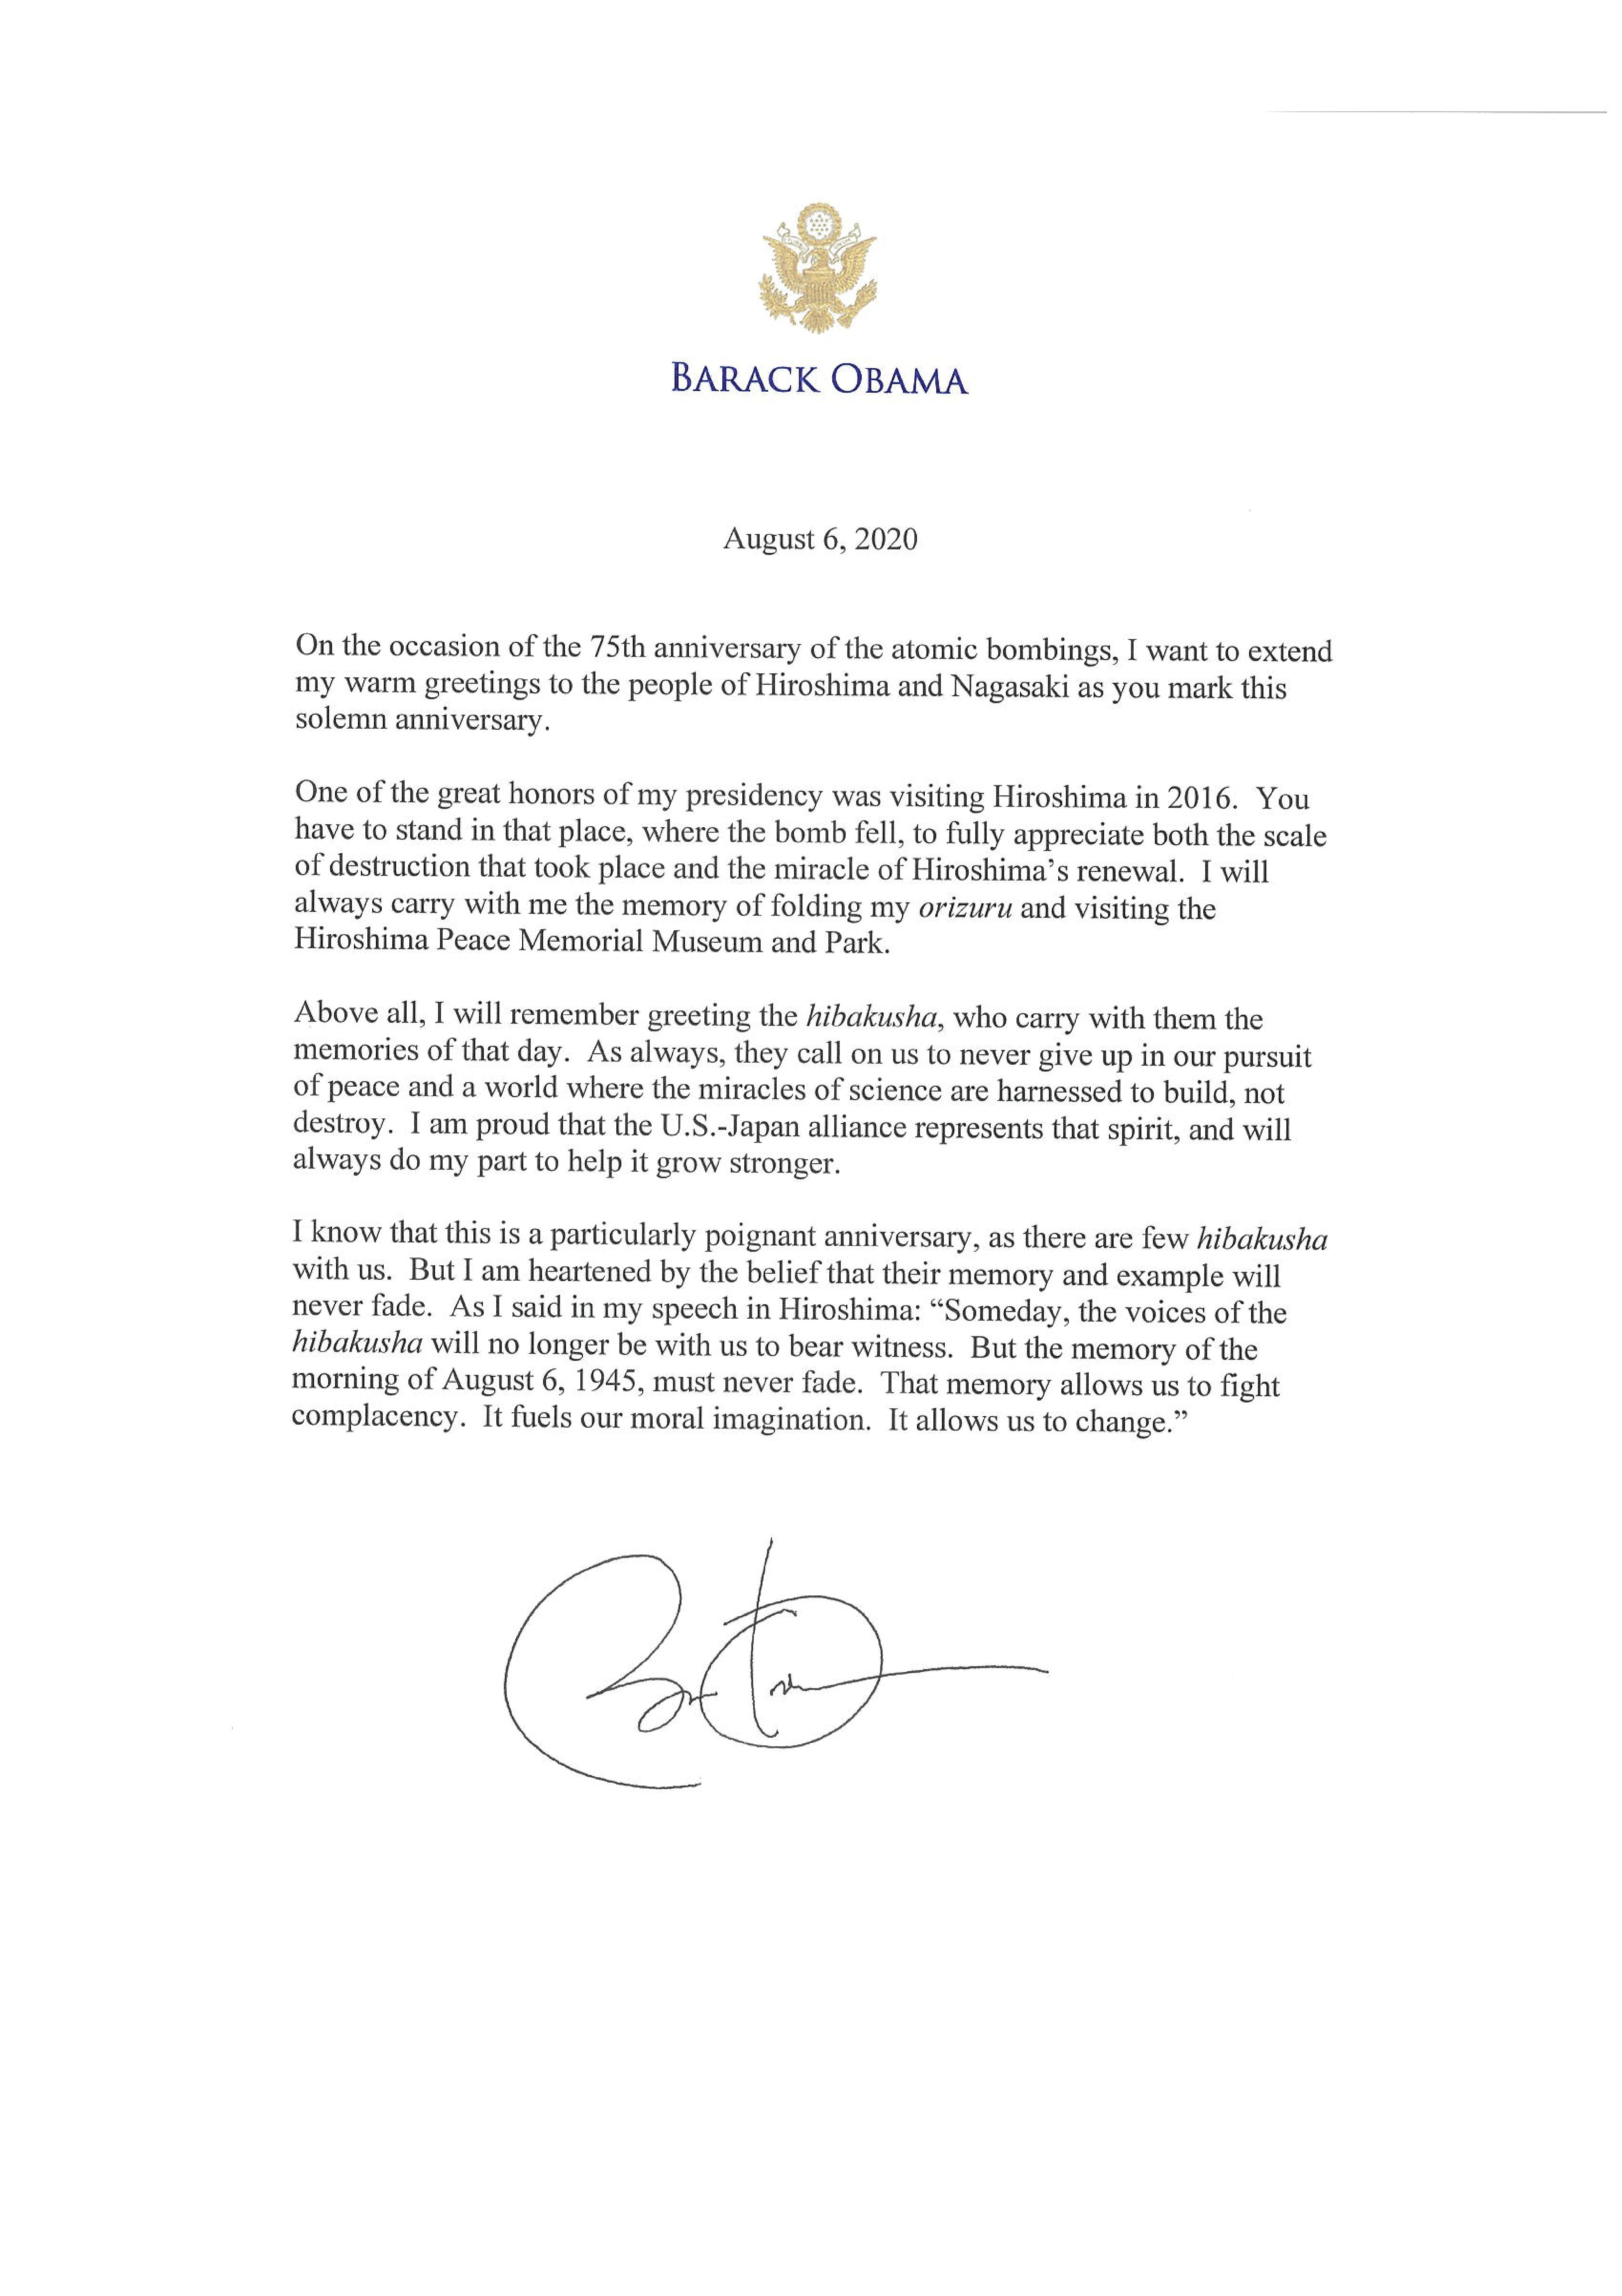 バラク オバマ 前アメリカ合衆国大統領 からのメッセージ 国際平和拠点ひろしま 核兵器のない世界平和に向けて